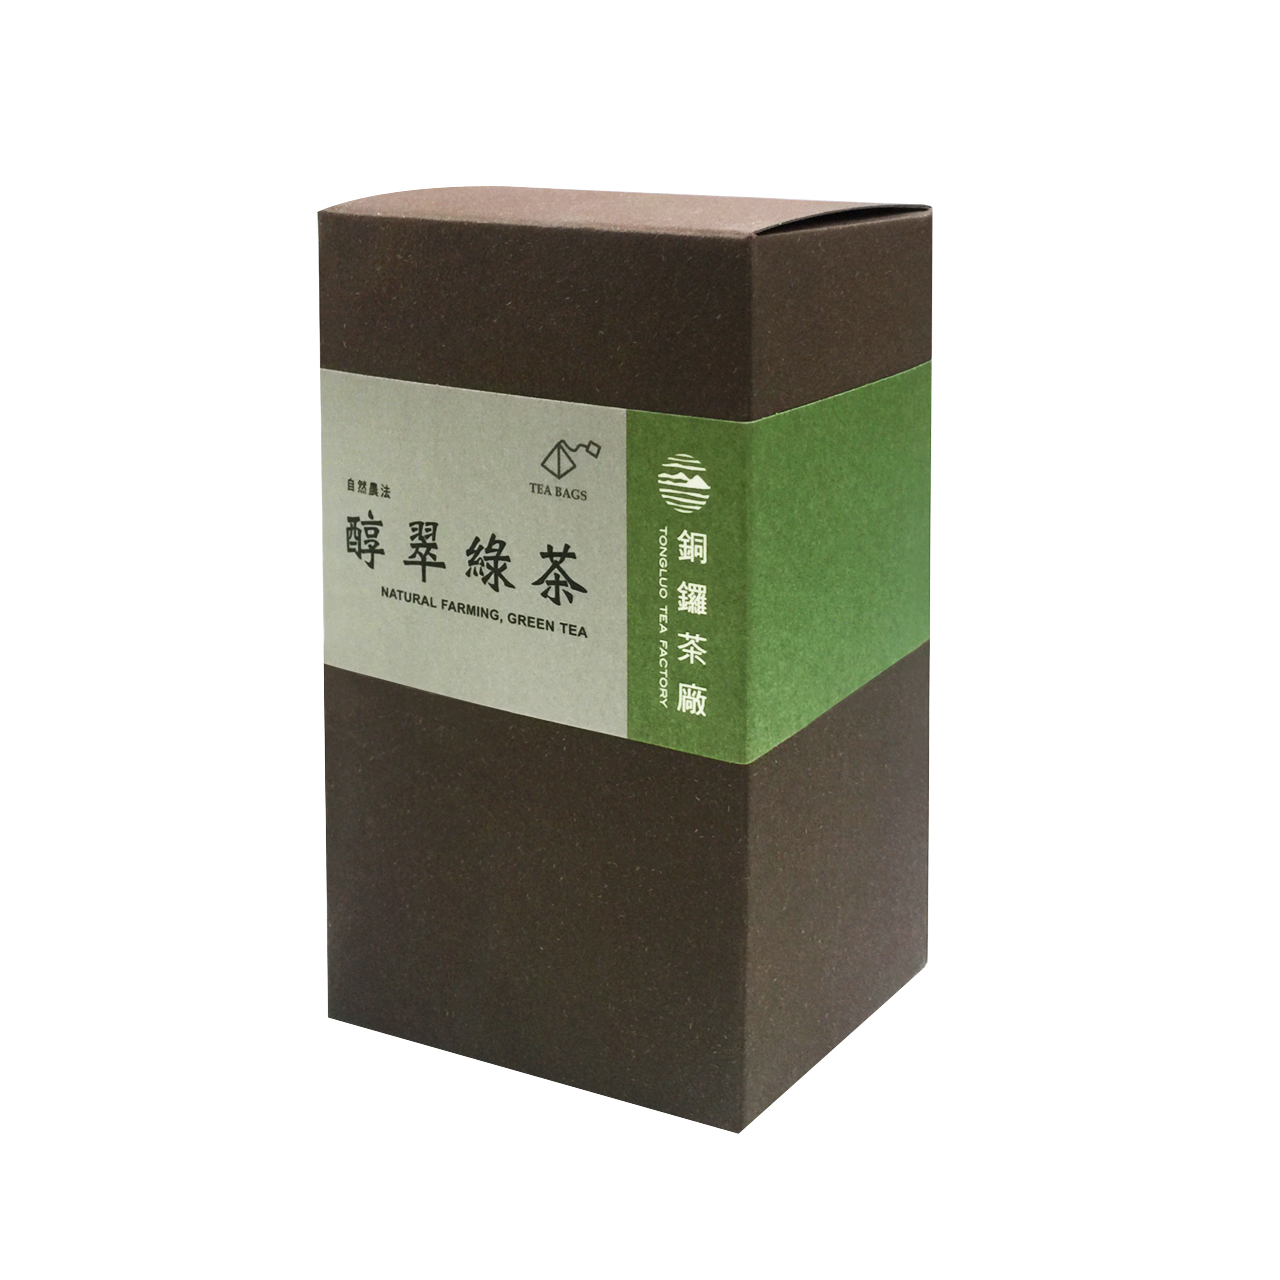 銅鑼-醇翠綠茶立體茶包(2.5g*20入)(自然農法)